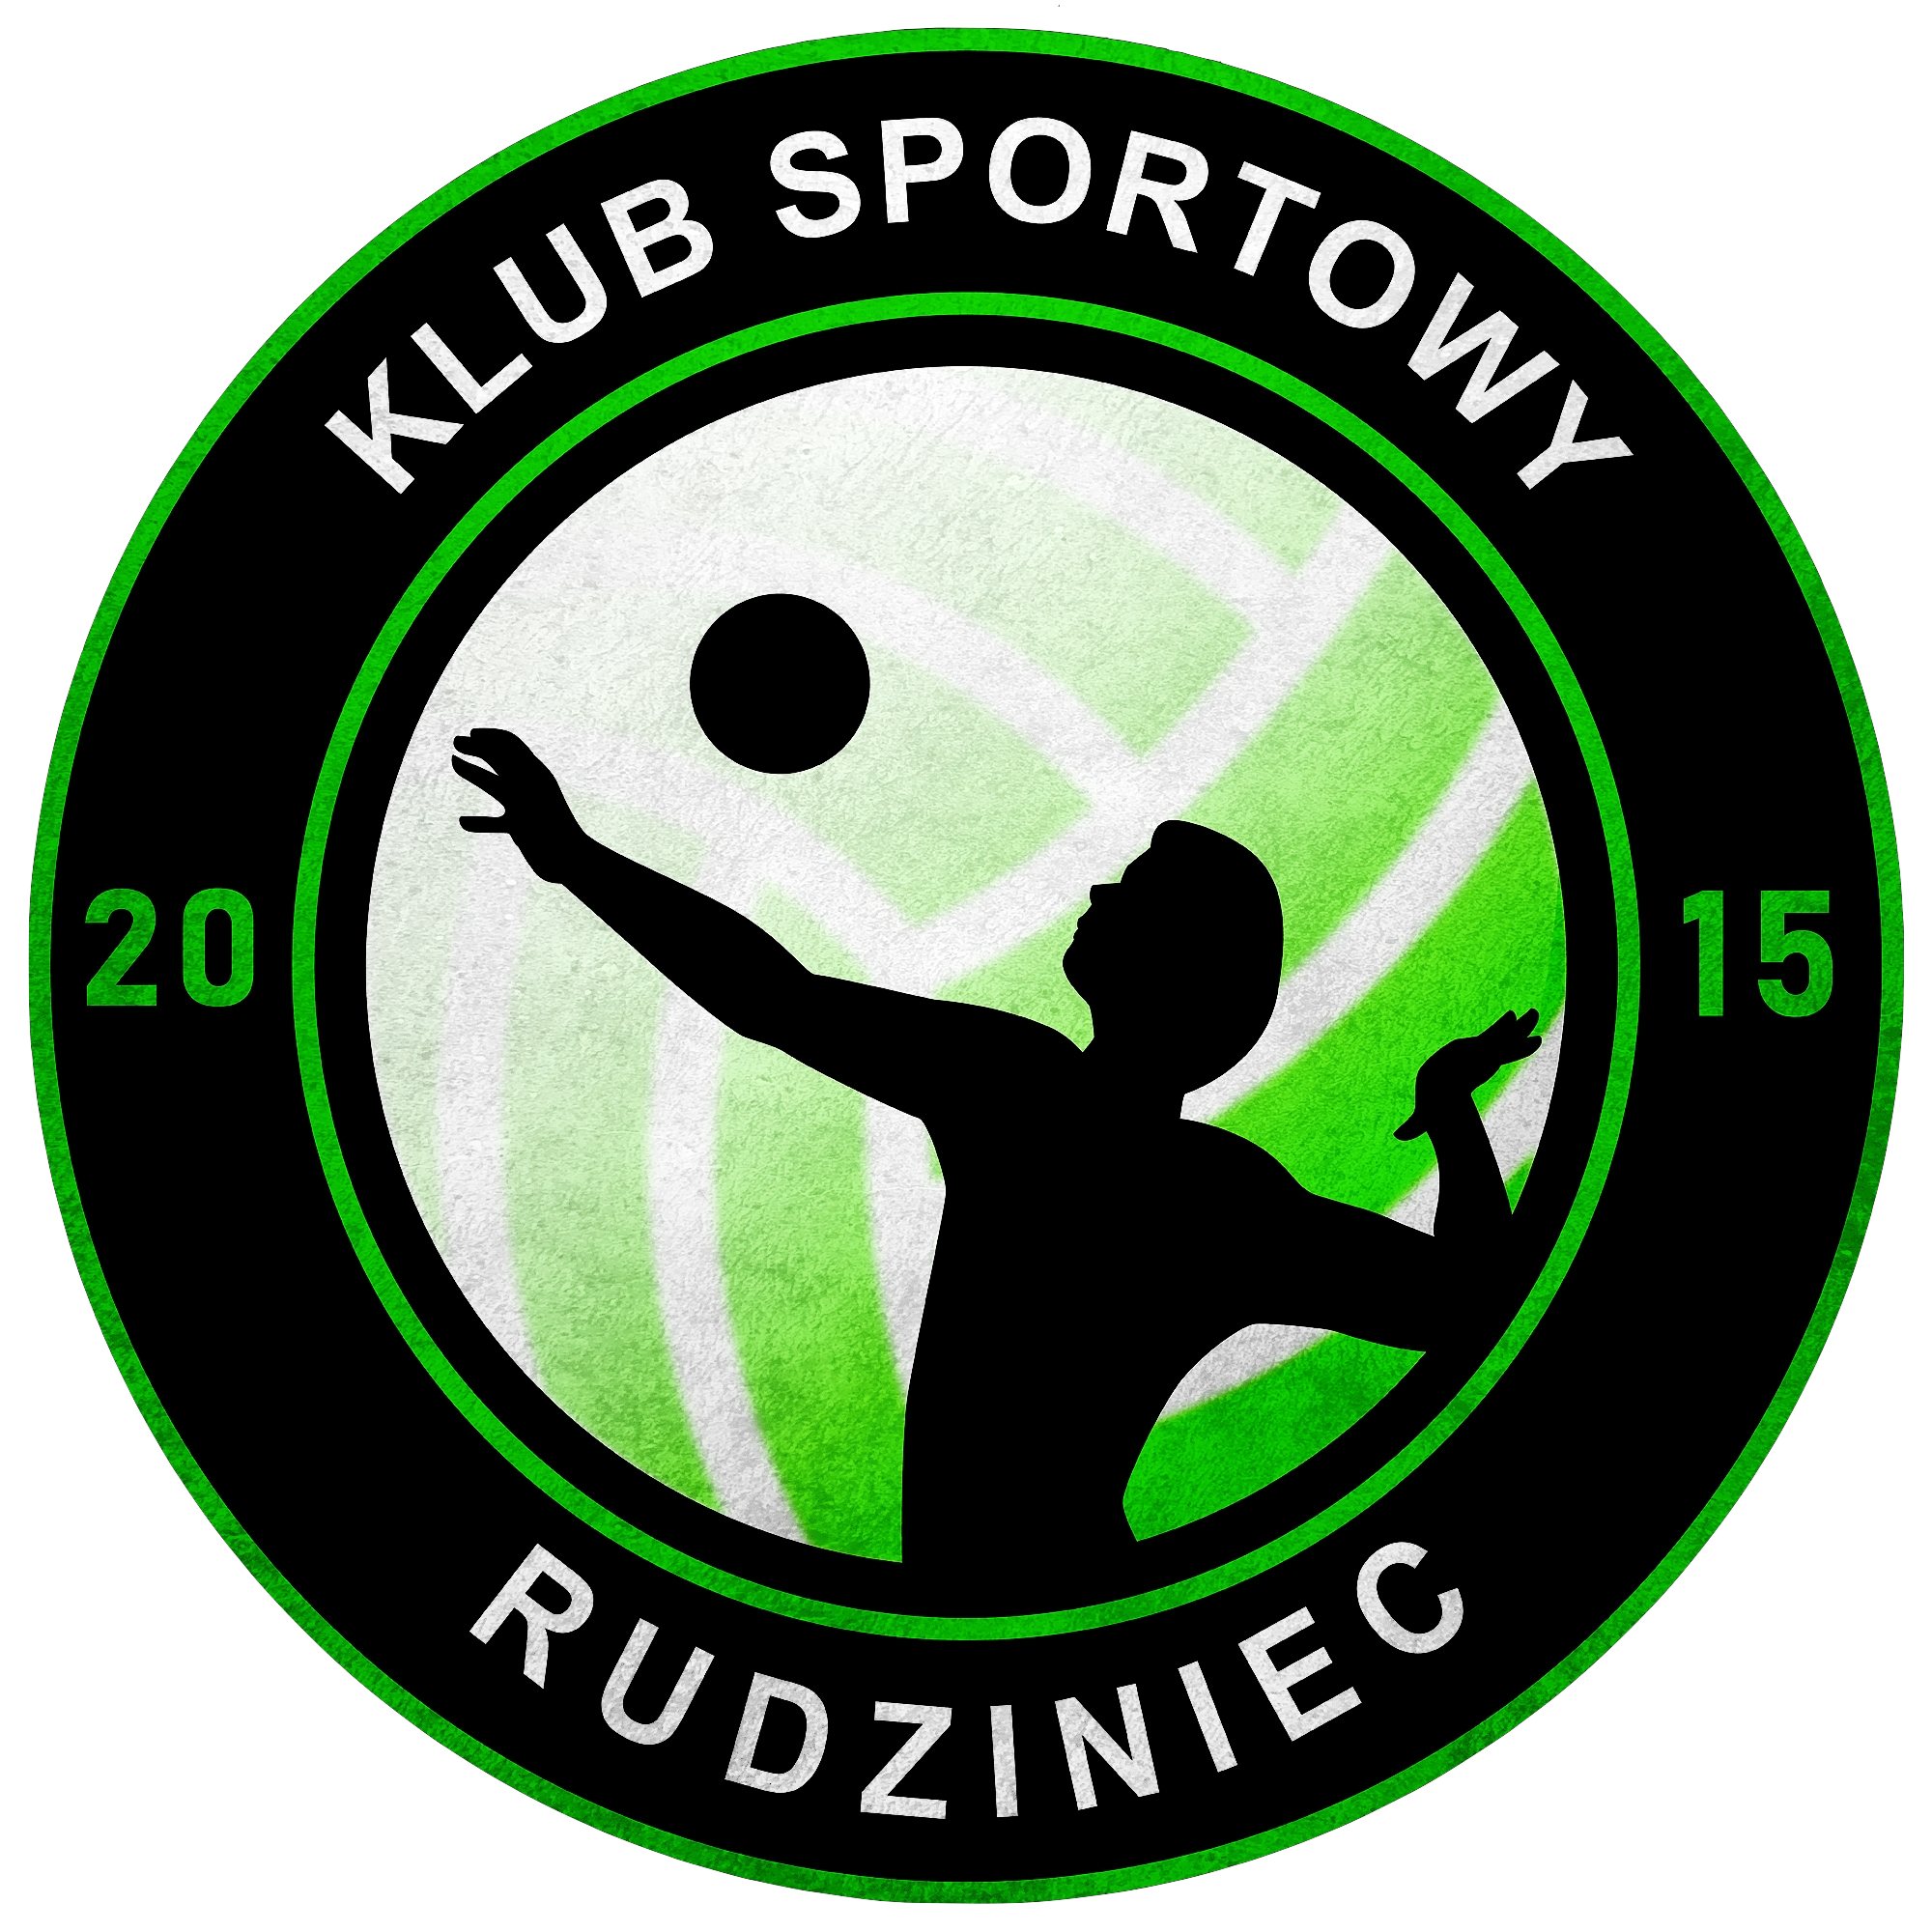 CM SOLEUS Klub Sportowy Rudziniec Logo